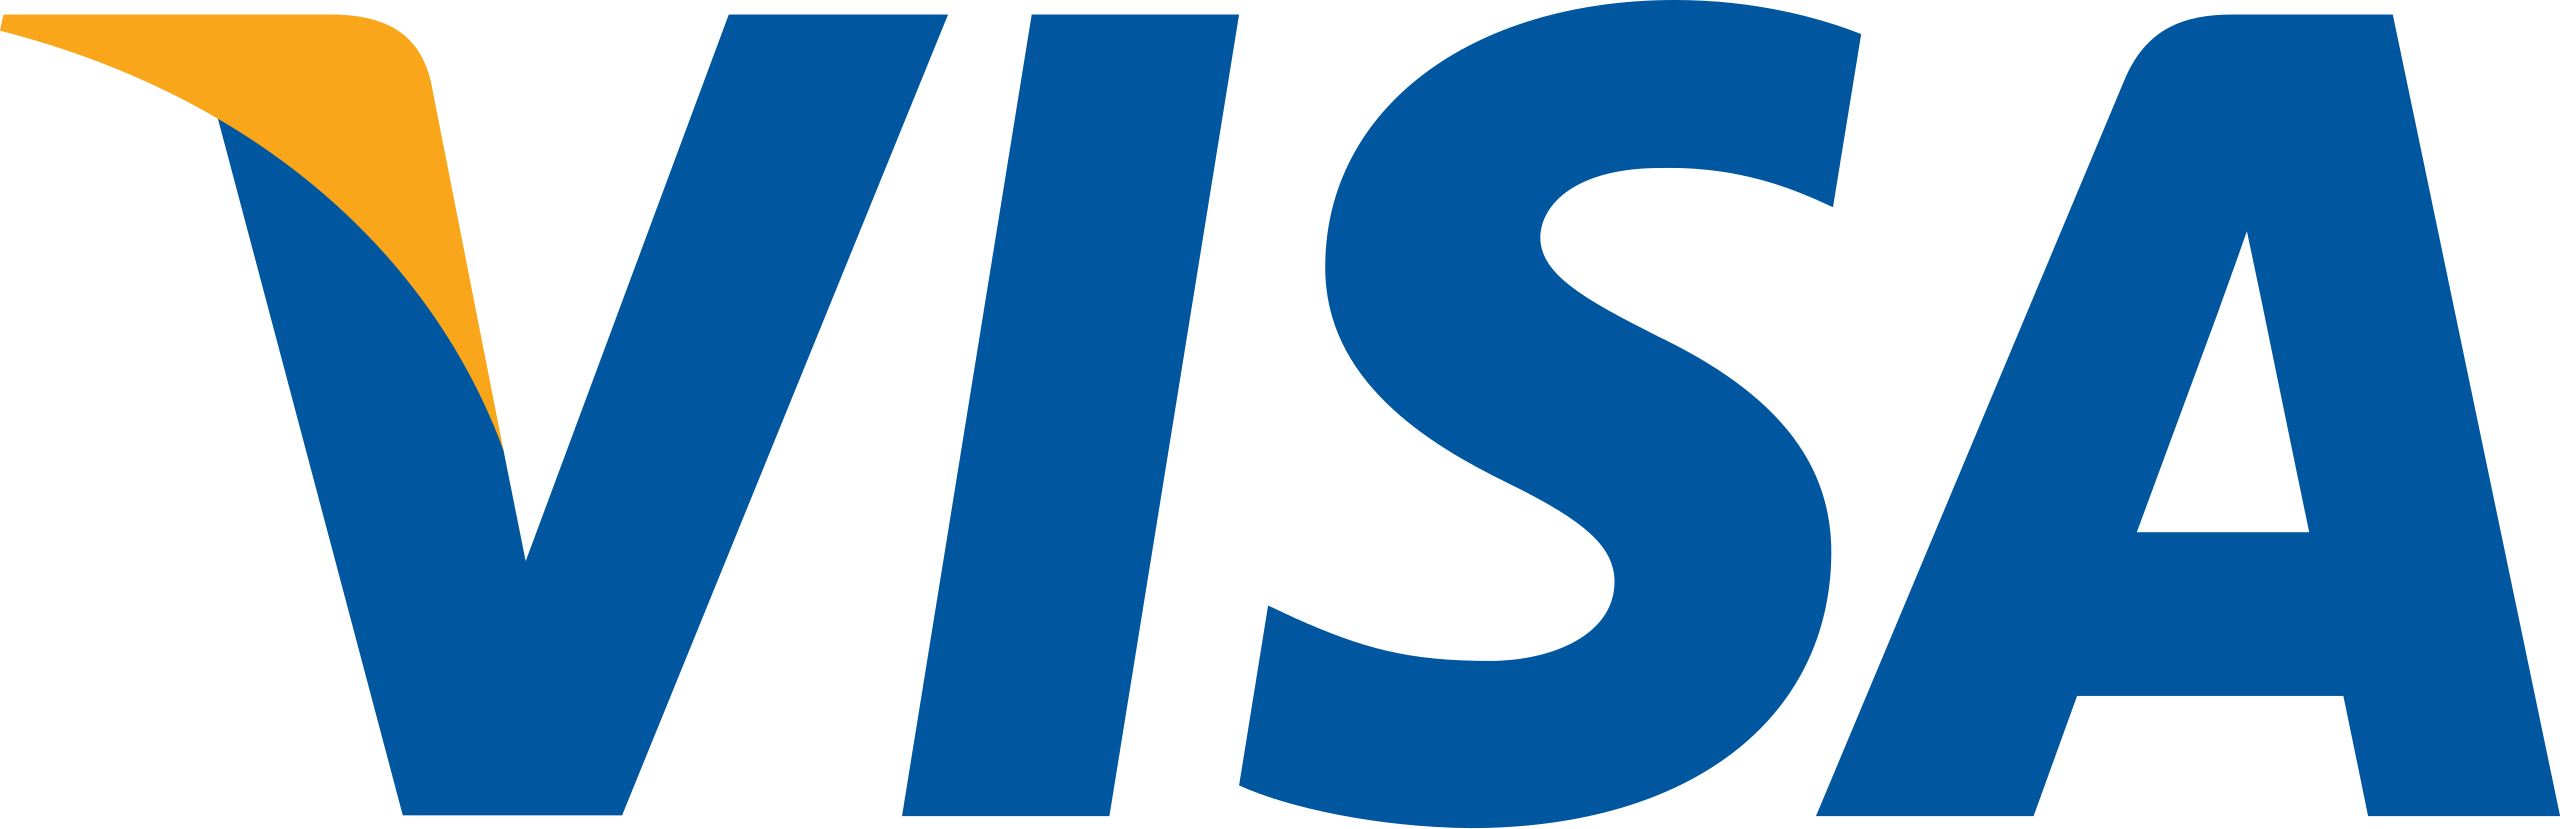 visa inc. logo